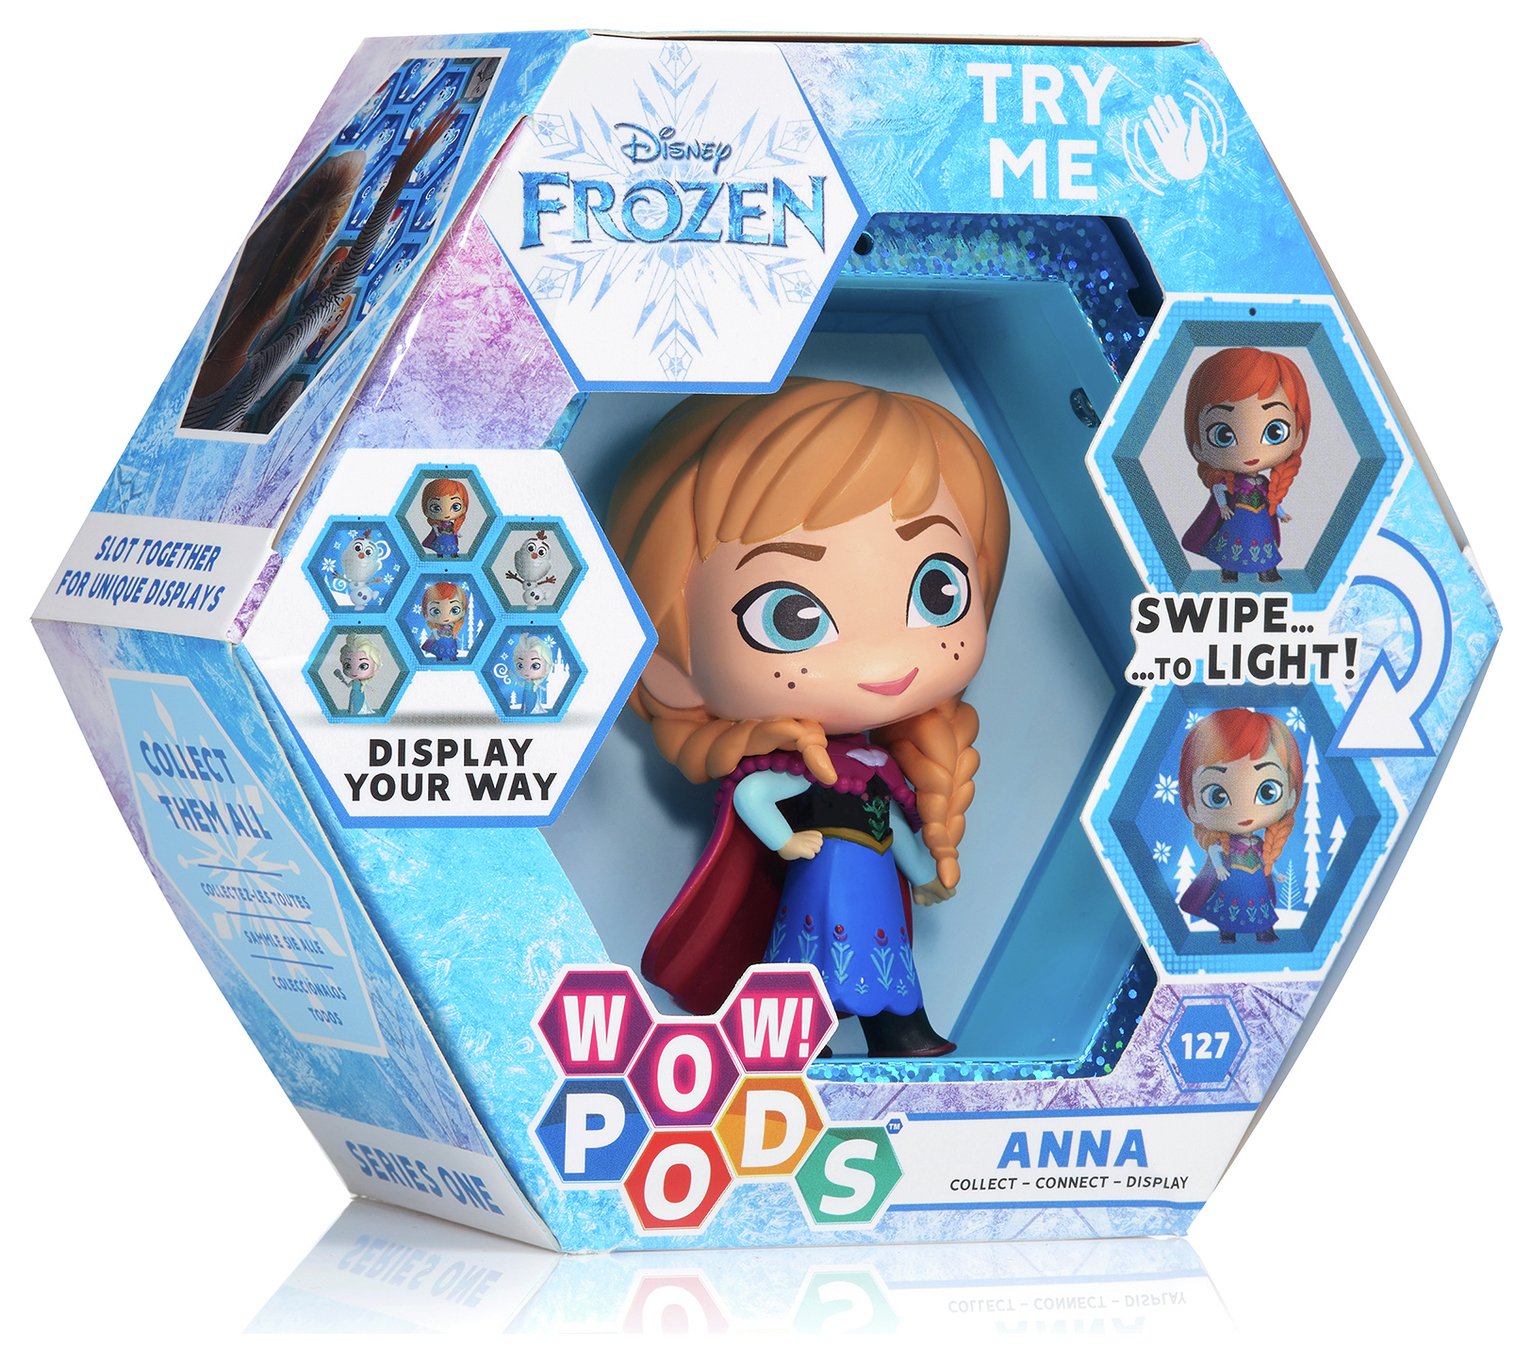 WOW! Pods Disney Frozen Anna Doll - 4inch/10cm